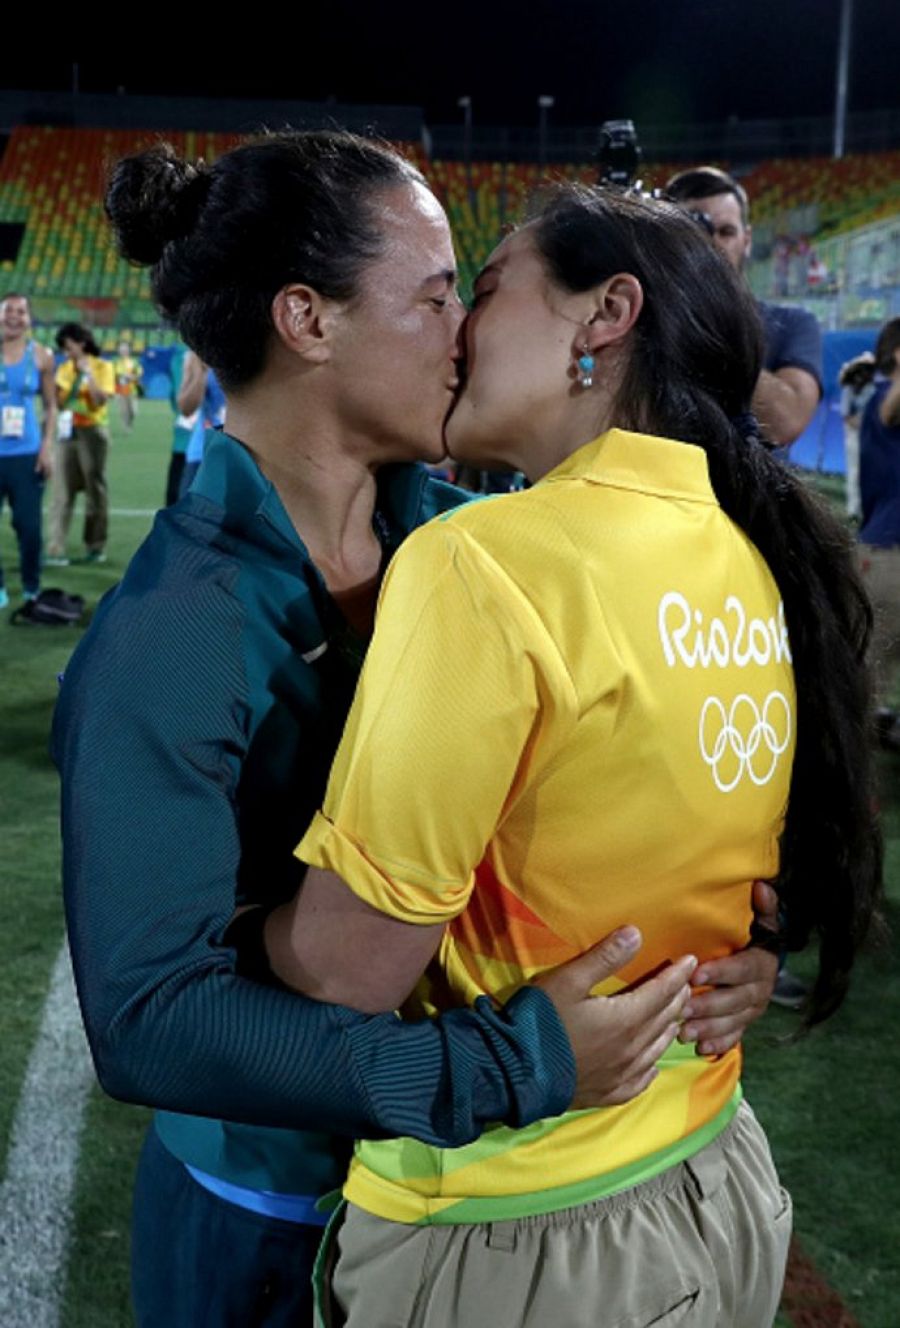 Majorie Enya besa a la jugadora de rugby Isidora Cerullo tras proponerle matrimonio